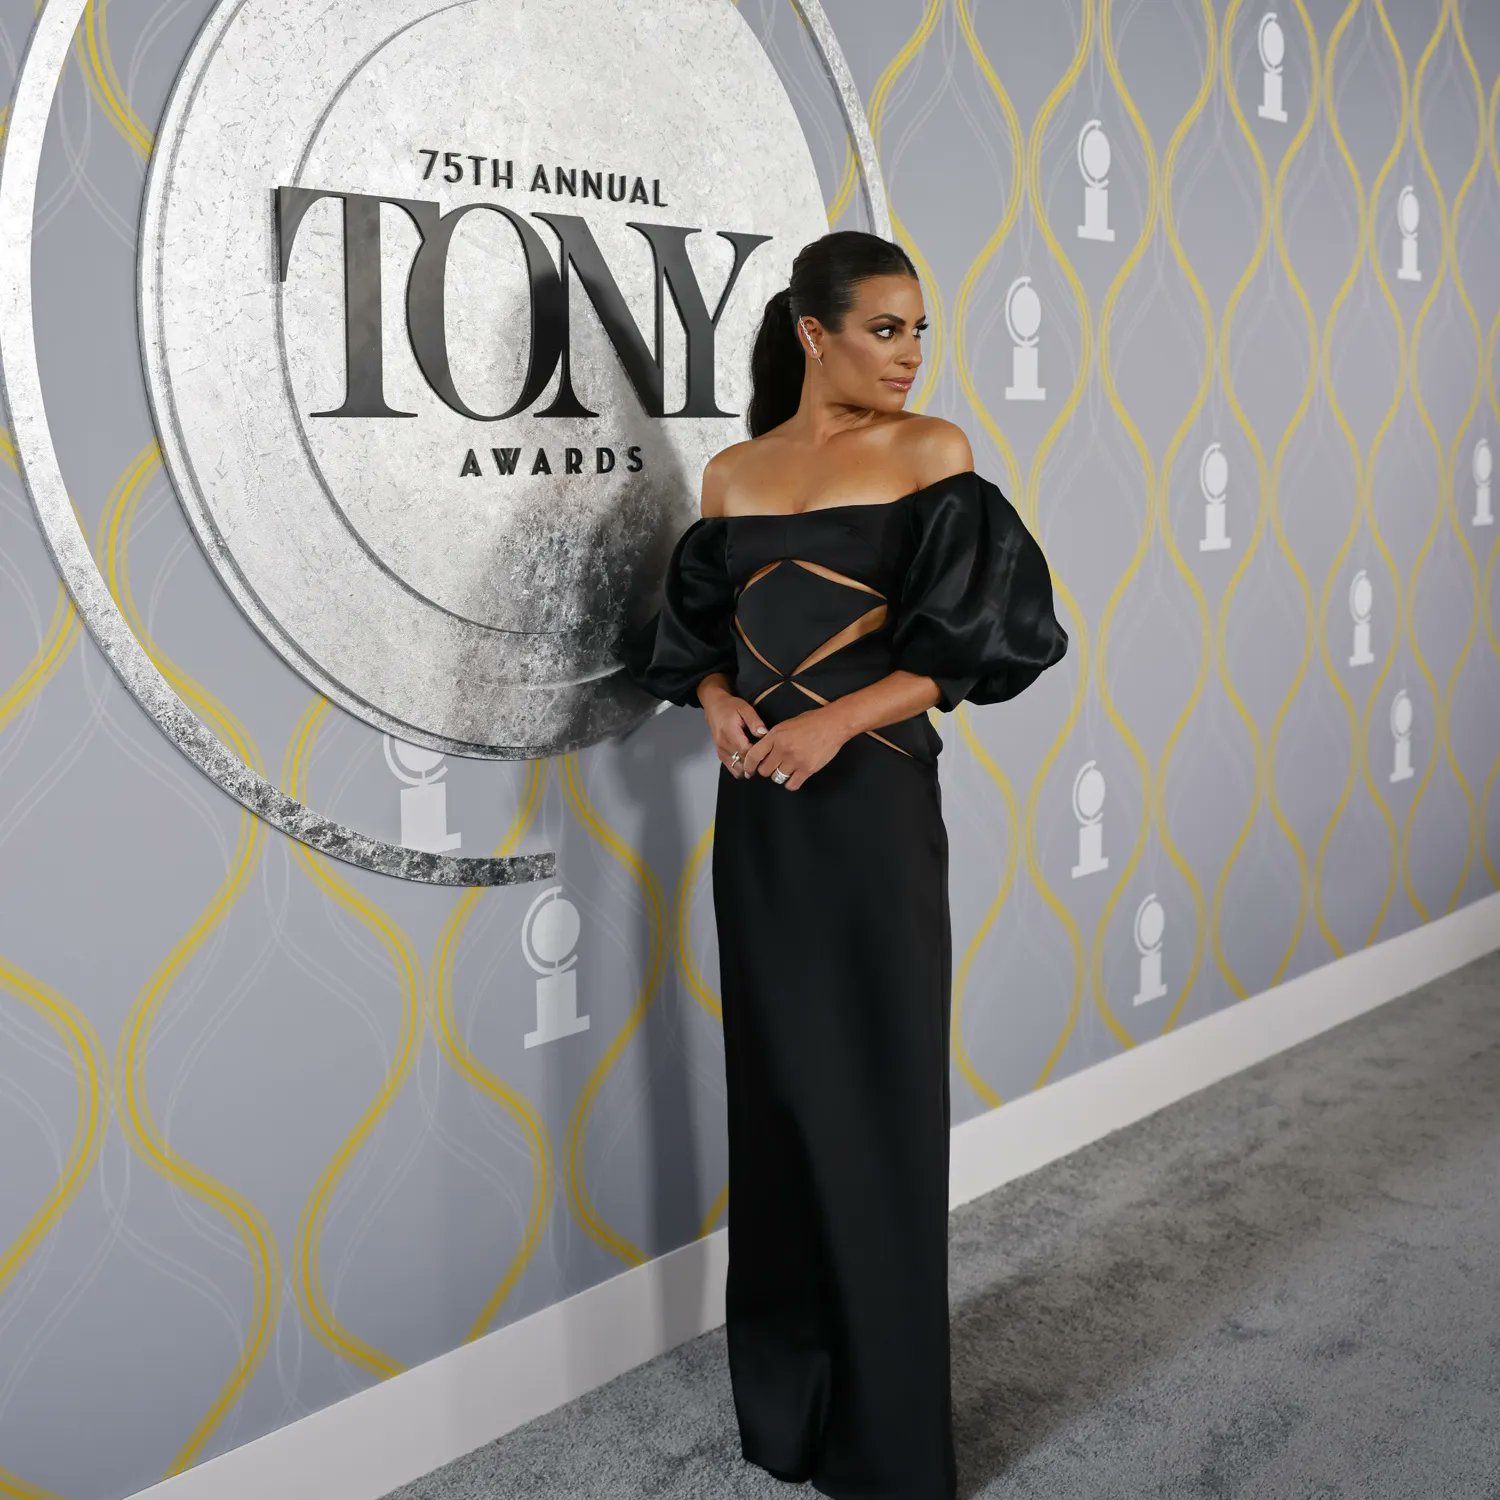 The 75th Annual TONY Awards!